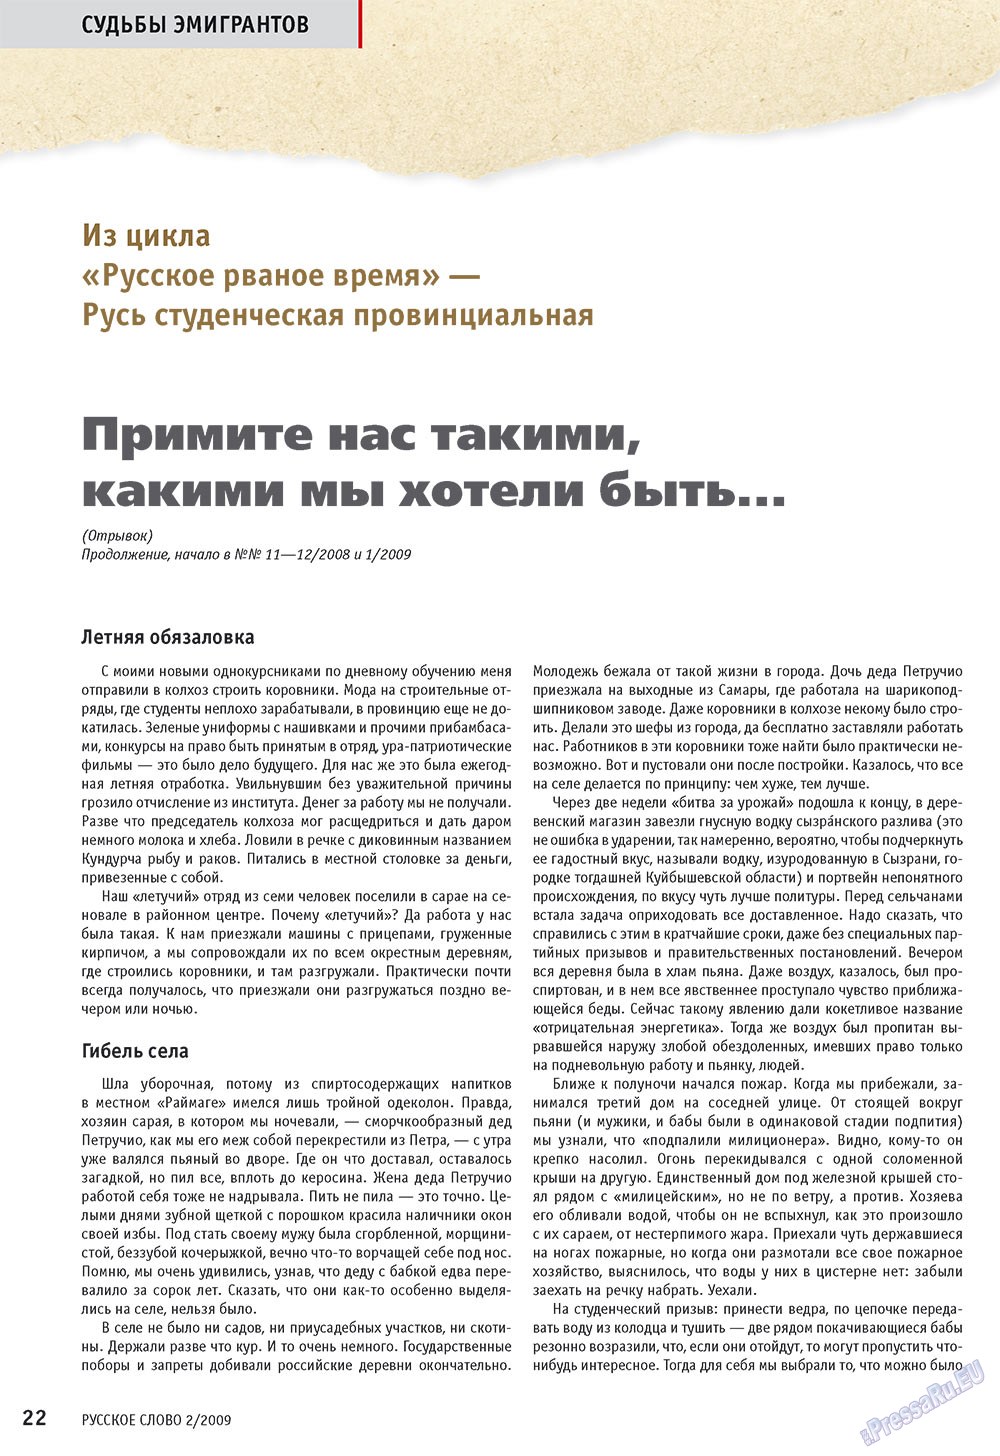 Русское слово (журнал). 2009 год, номер 2, стр. 24